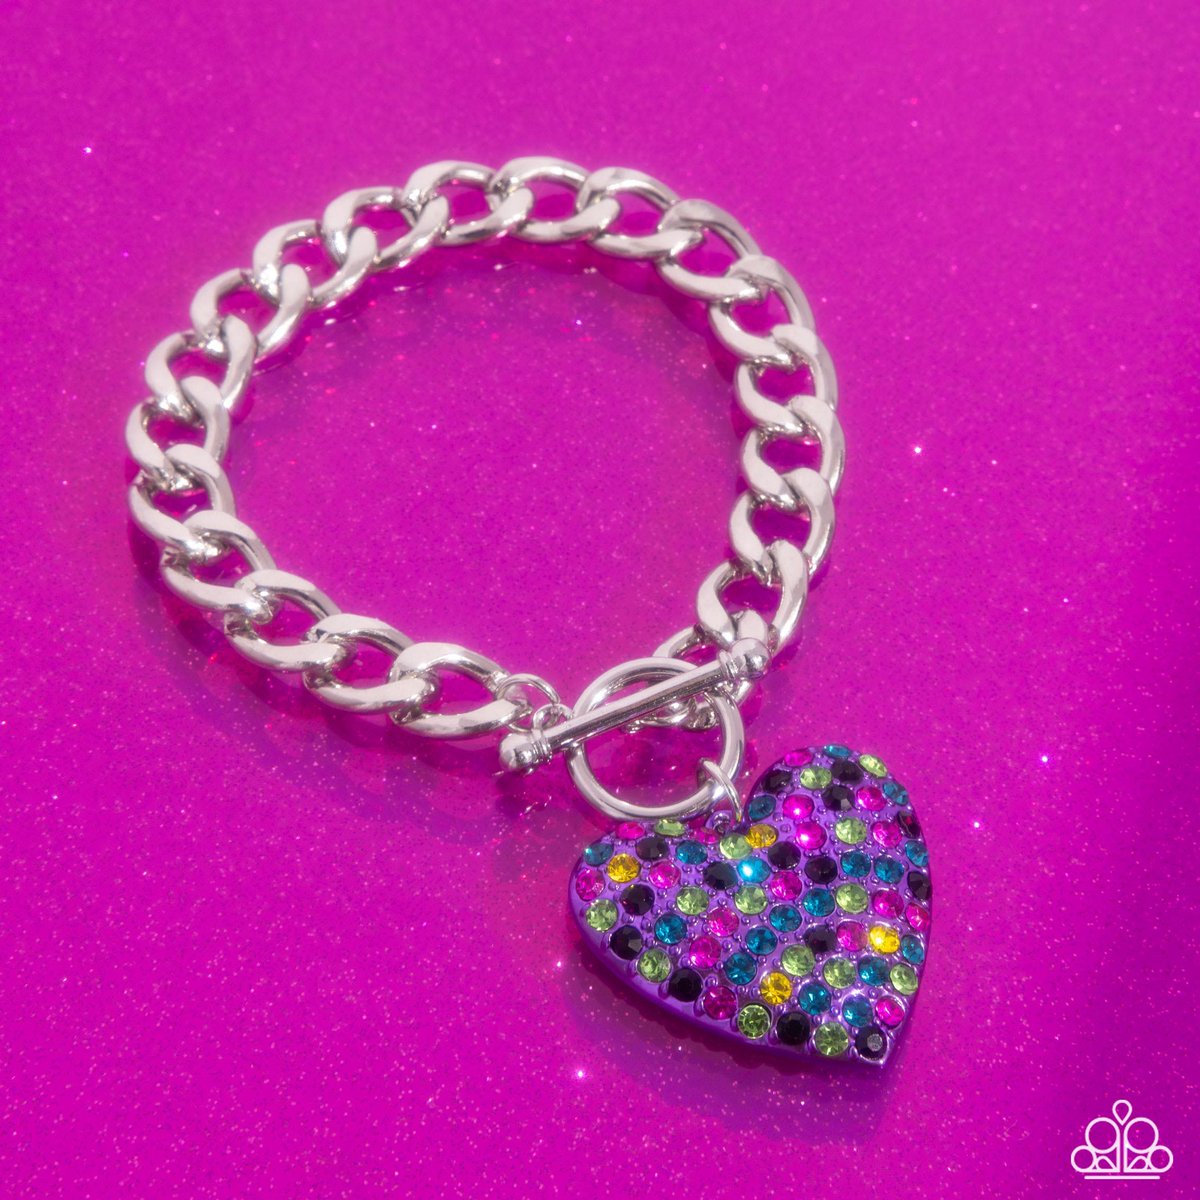 SNEAK PEEK: Express your individuality with heartfelt style. #Bracelet #Purple #Hearts #StyleGoals